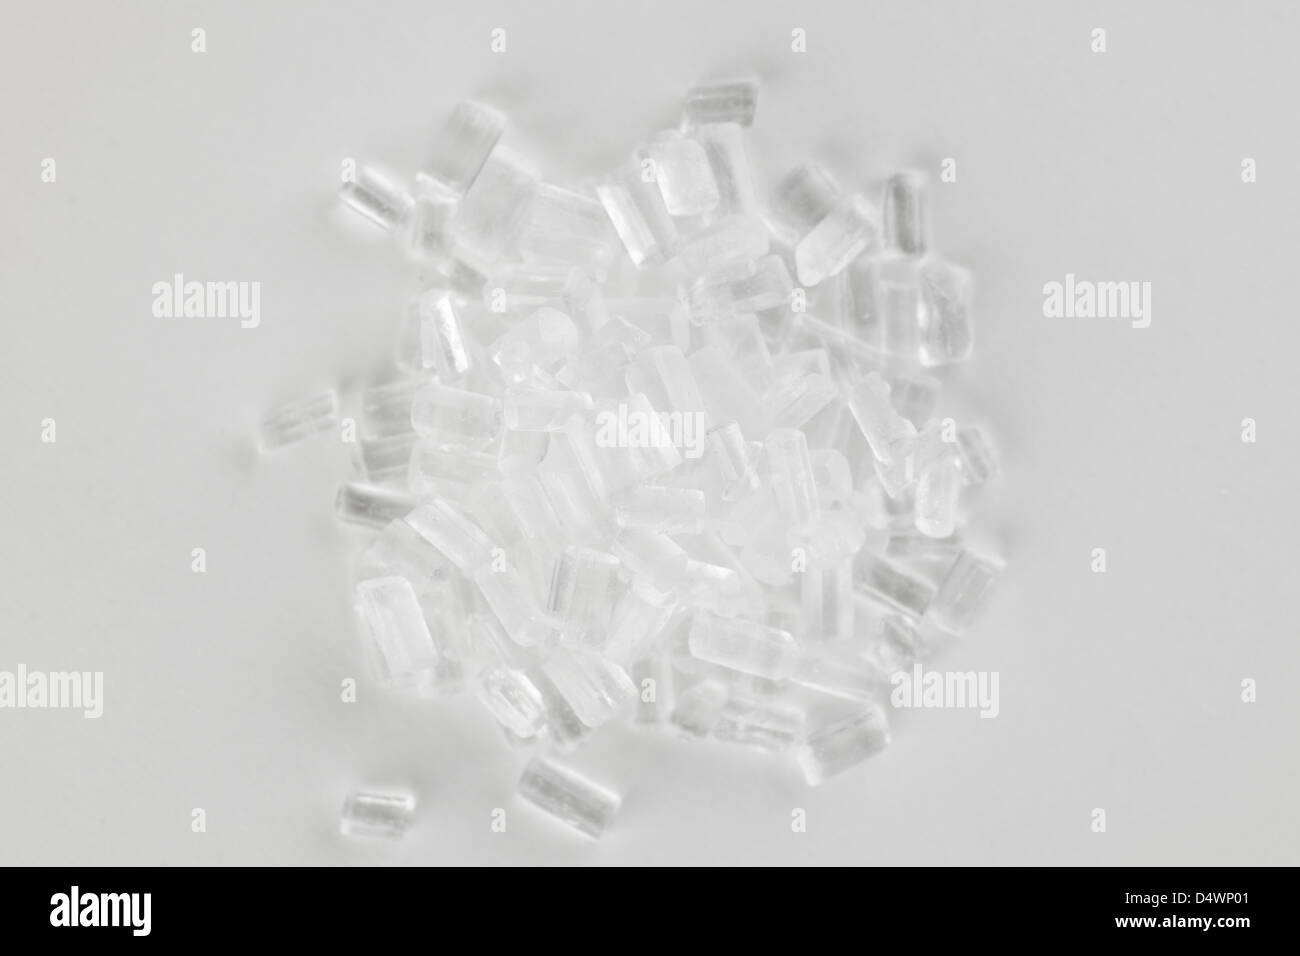 Pile de thiosulfate de sodium Na2S2O3 cristaux incolores Banque D'Images